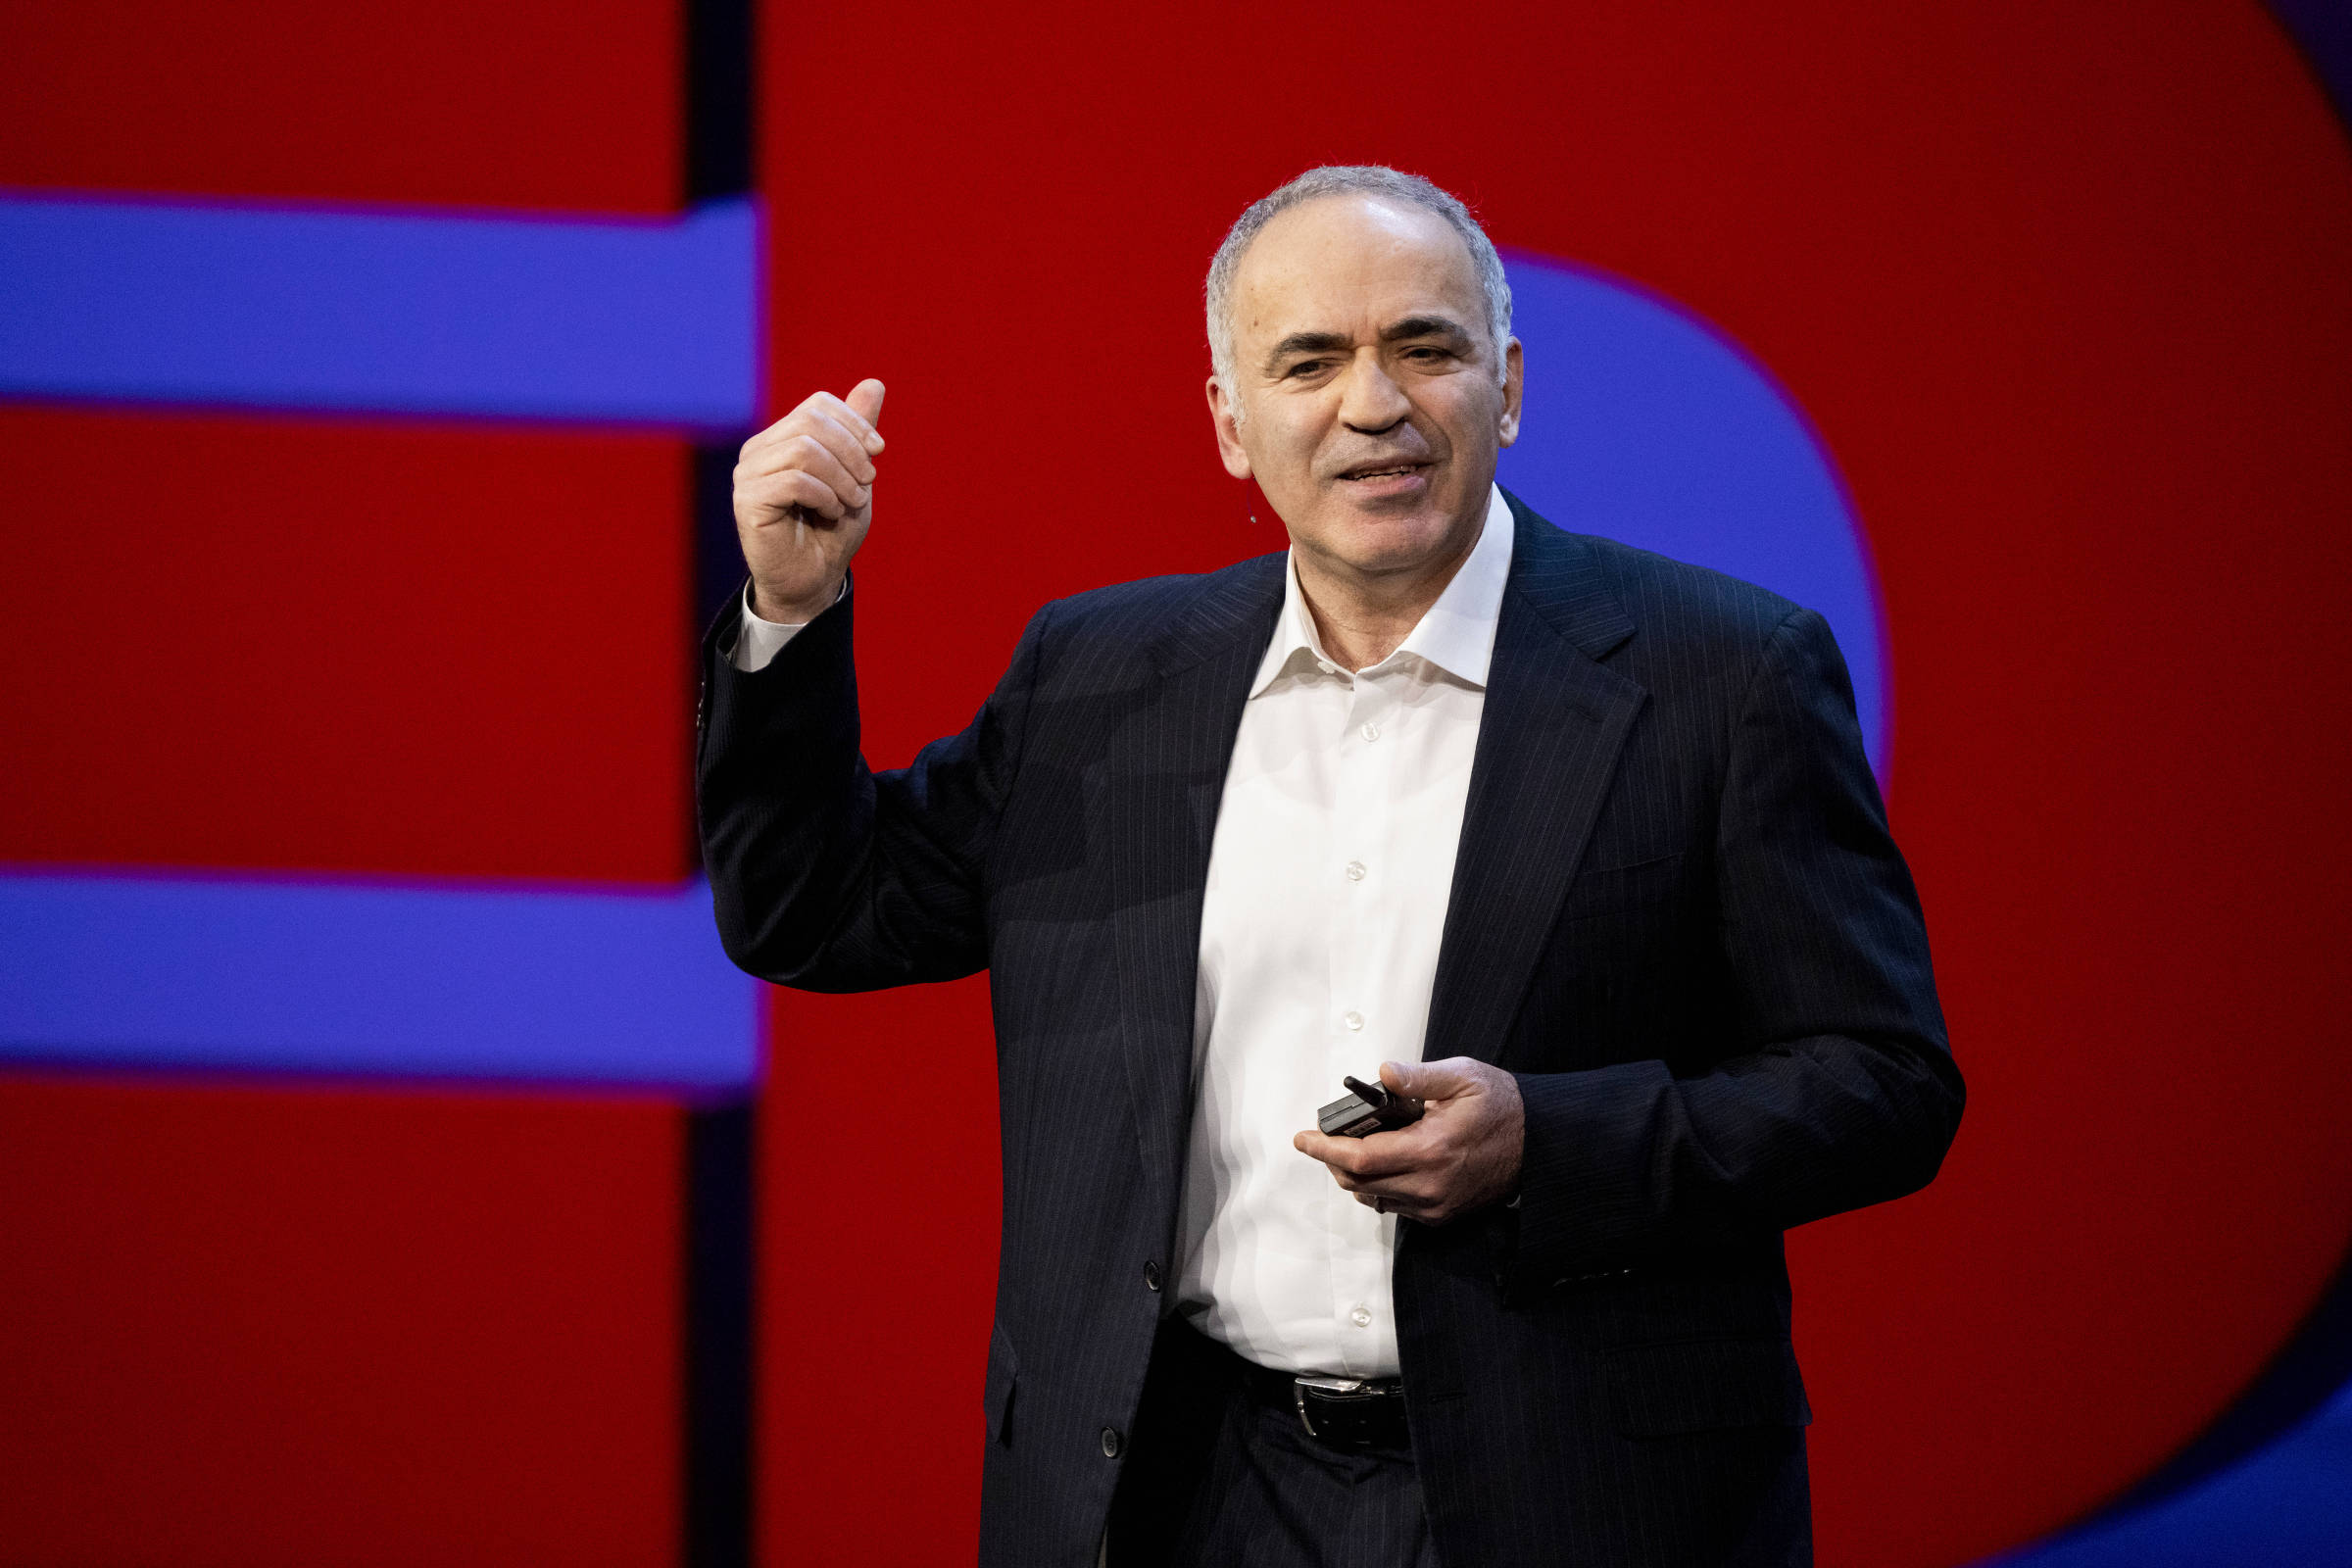 Kasparov: «A Rússia deve ser atirada de volta à Idade da Pedra